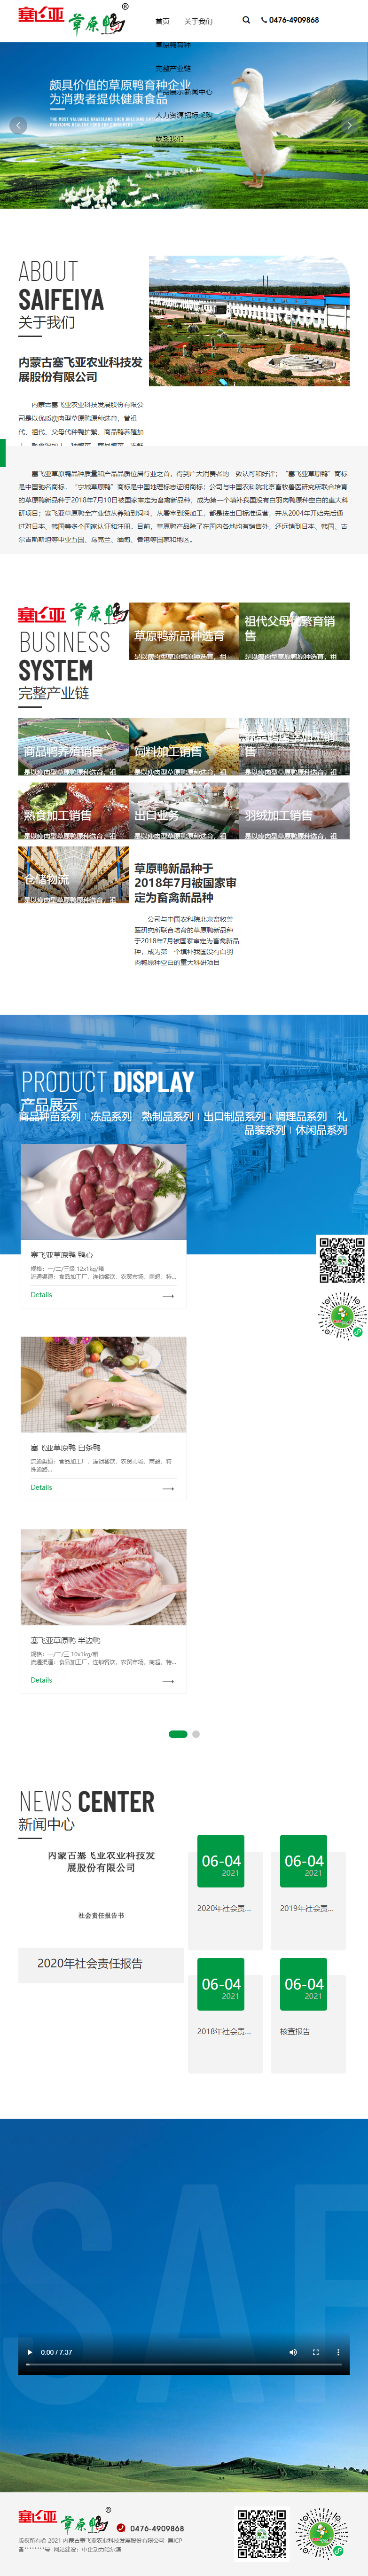 内蒙古塞飞亚农业科技发展股份有限公司网站案例